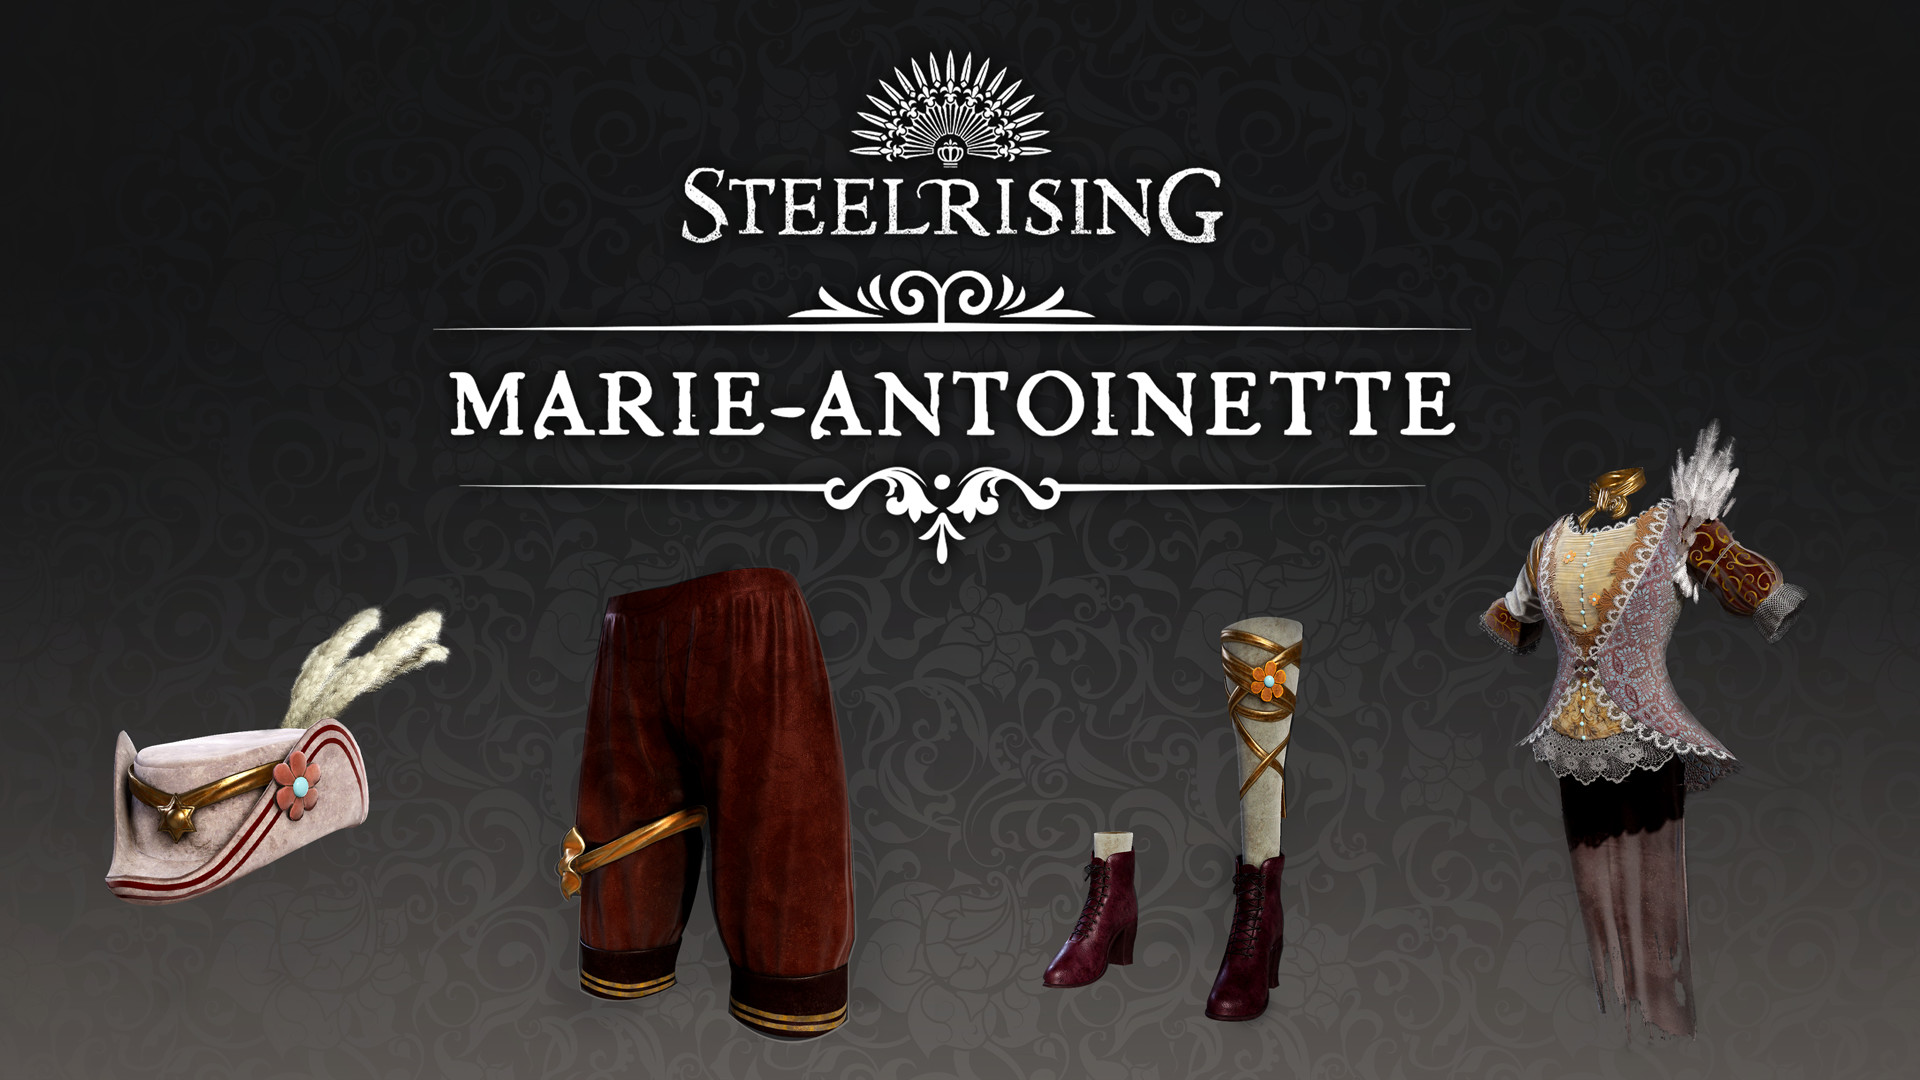 Steelrising - Marie-Antoinette Cosmetic Pack DLC Steam CD Key 1.01 USD